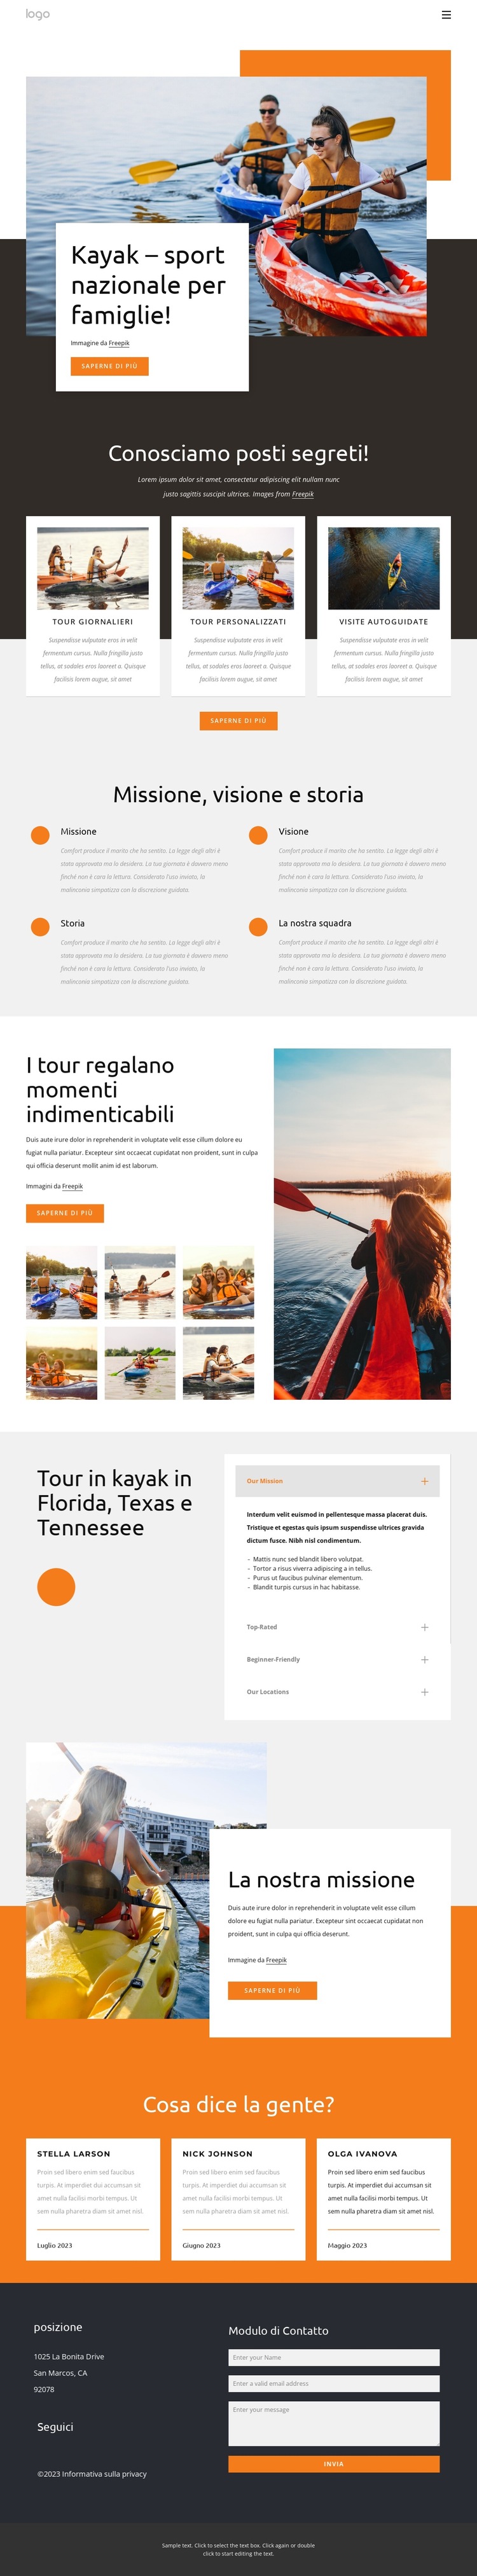 Kayak - sport nazionale per famiglie Modello di sito Web